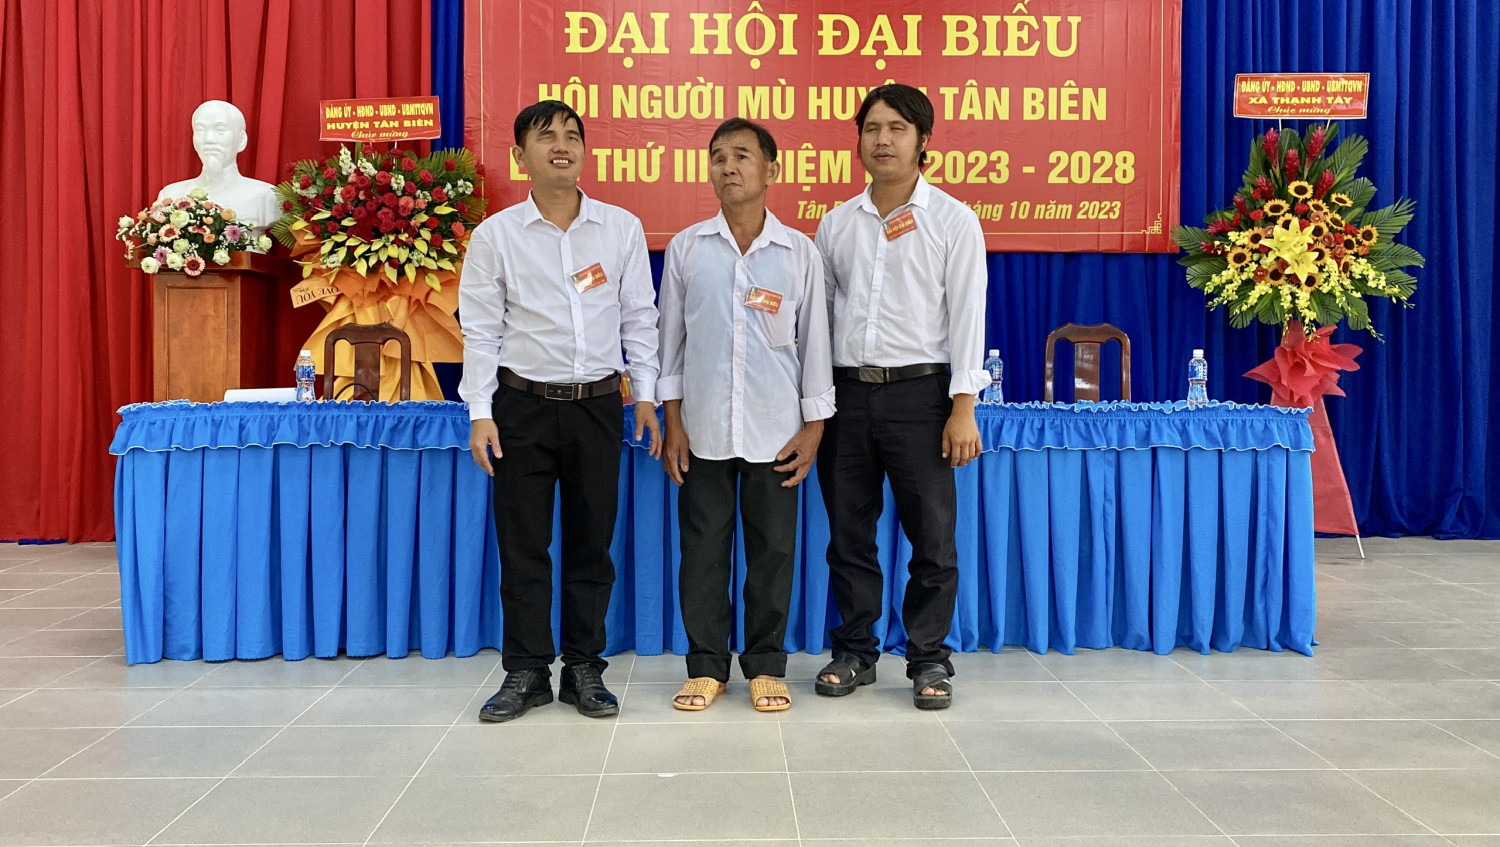 Đại hội đại biểu Hội người mù huyện Tân Biên lần thứ III, nhiệm kỳ 2023-2028